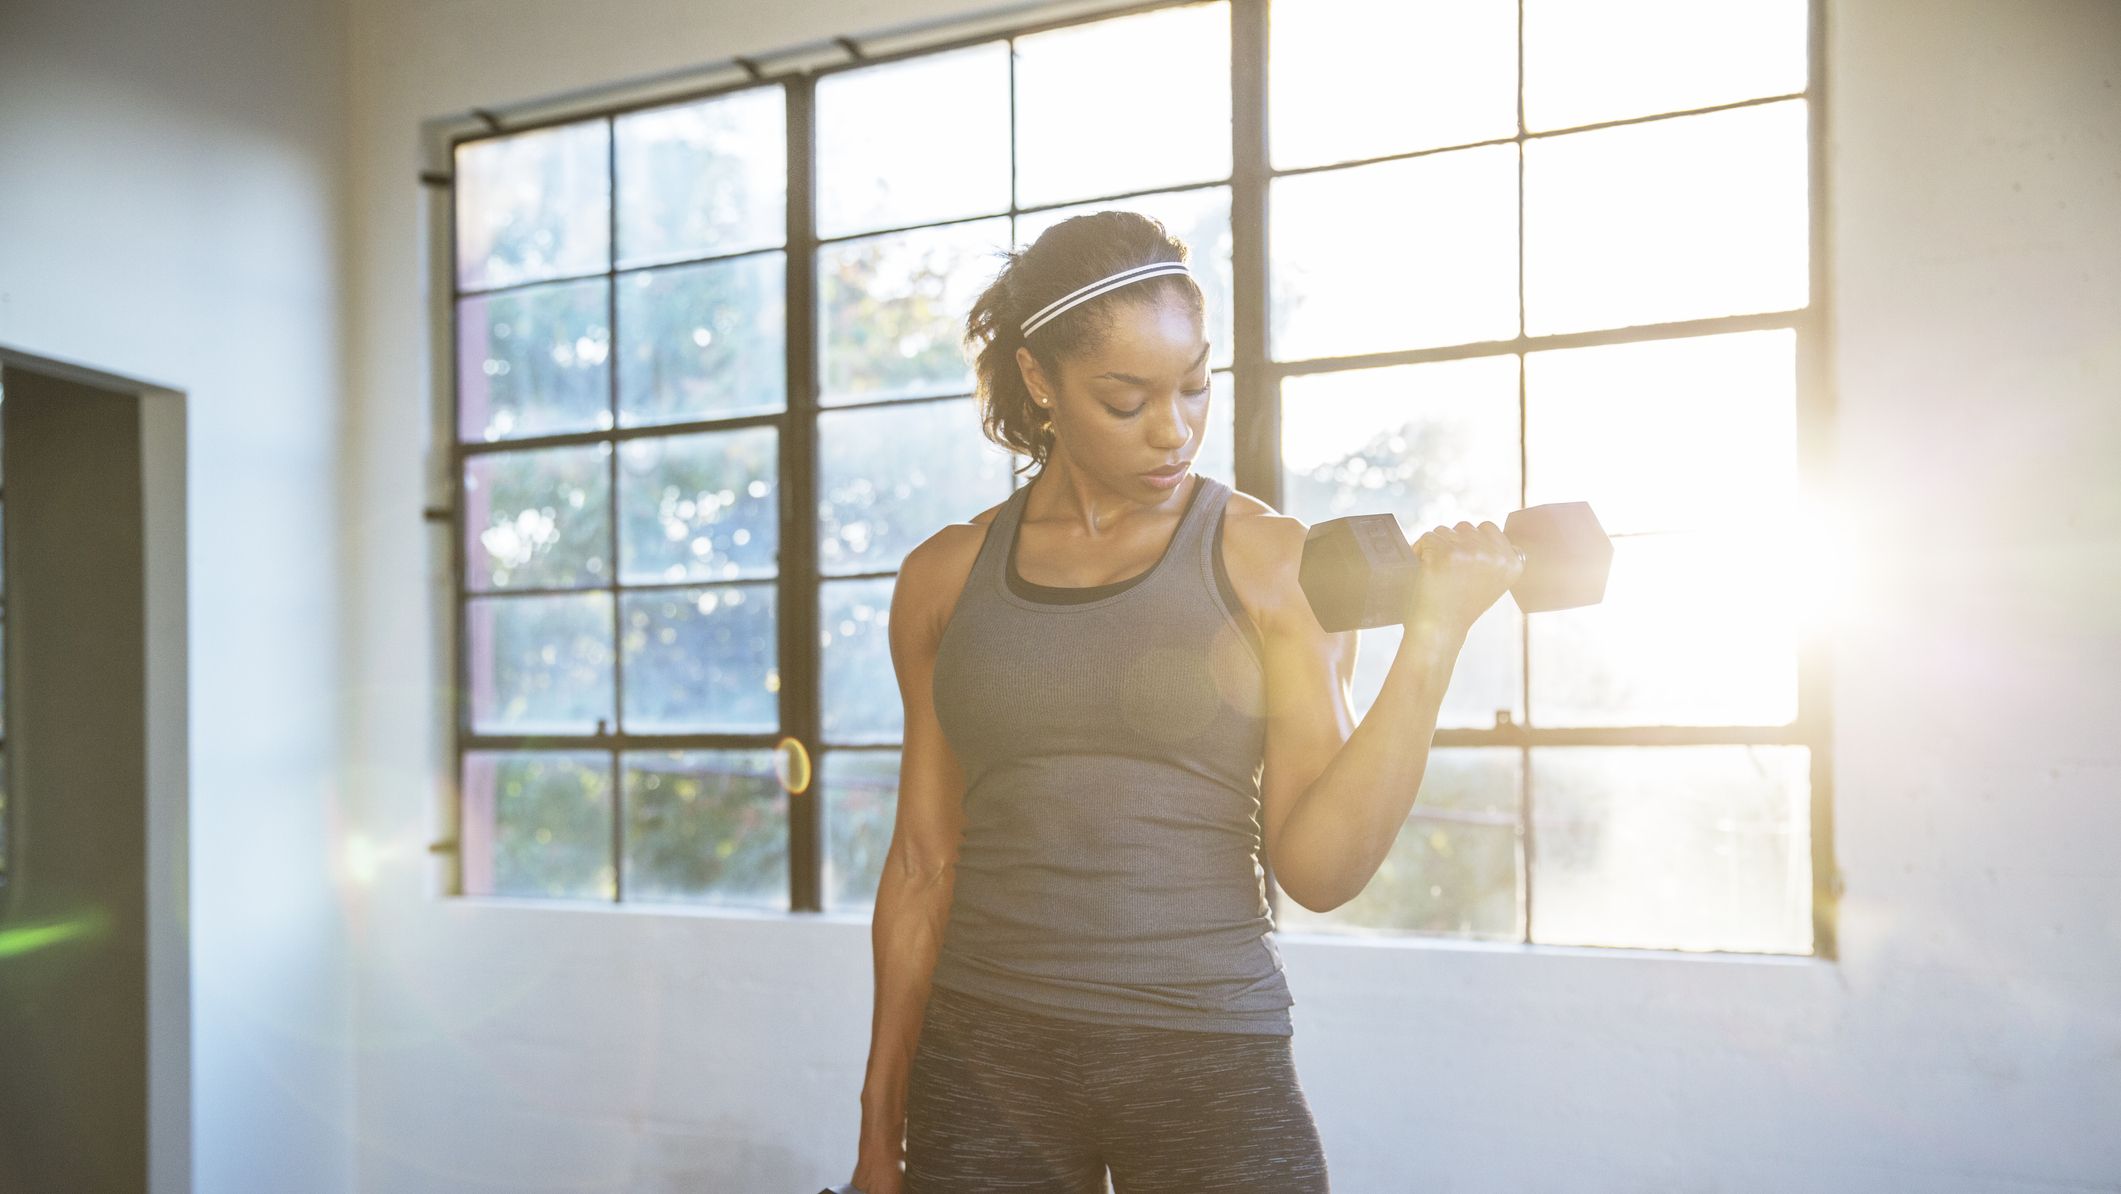 5 Fitness Goals for Women (That Aren't Weight Loss)